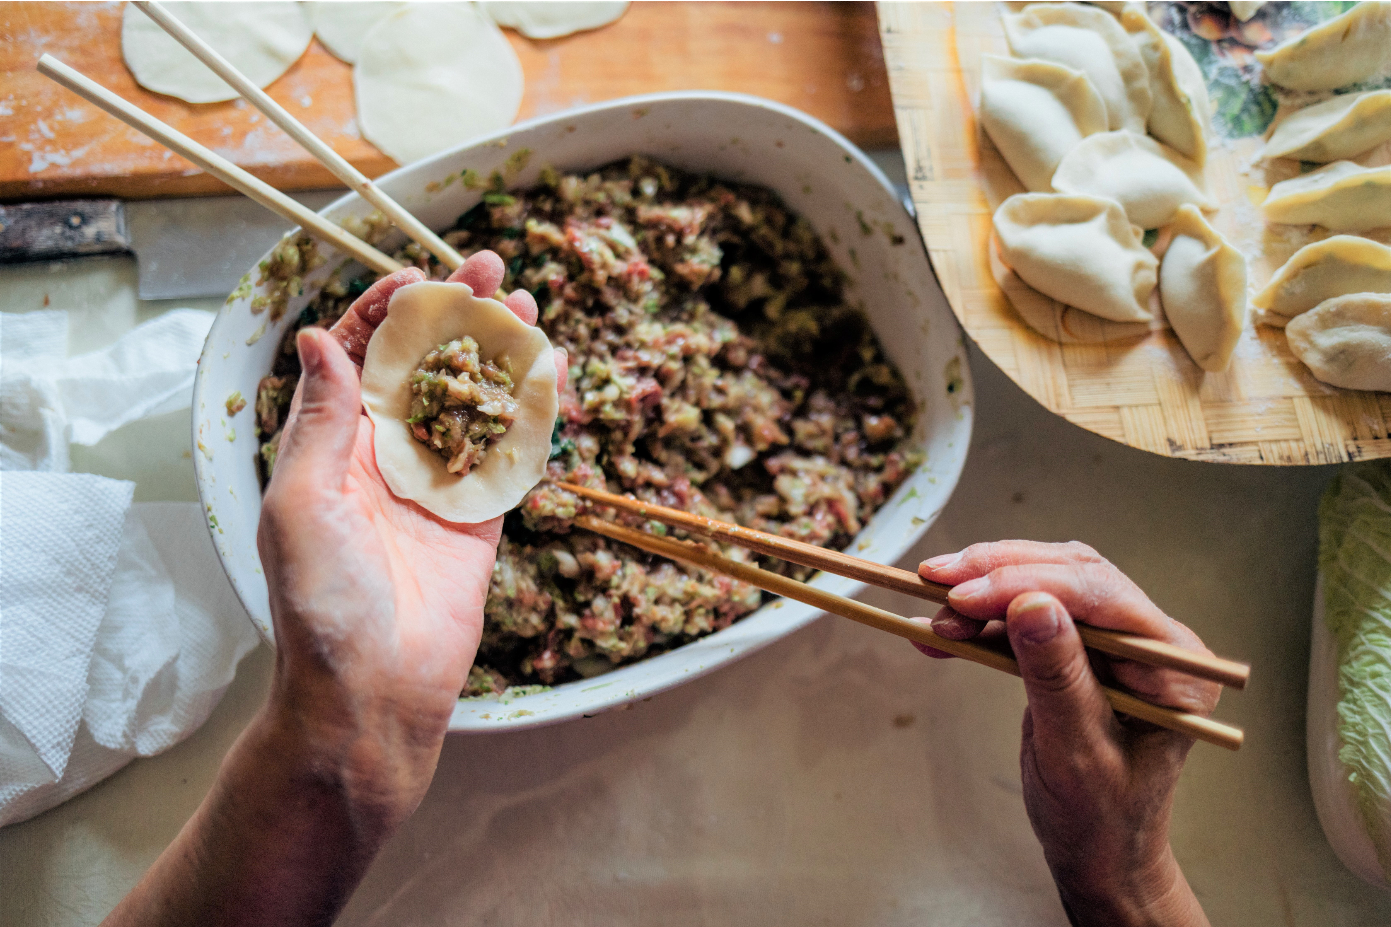 No Ordinary Dumpling: Filling